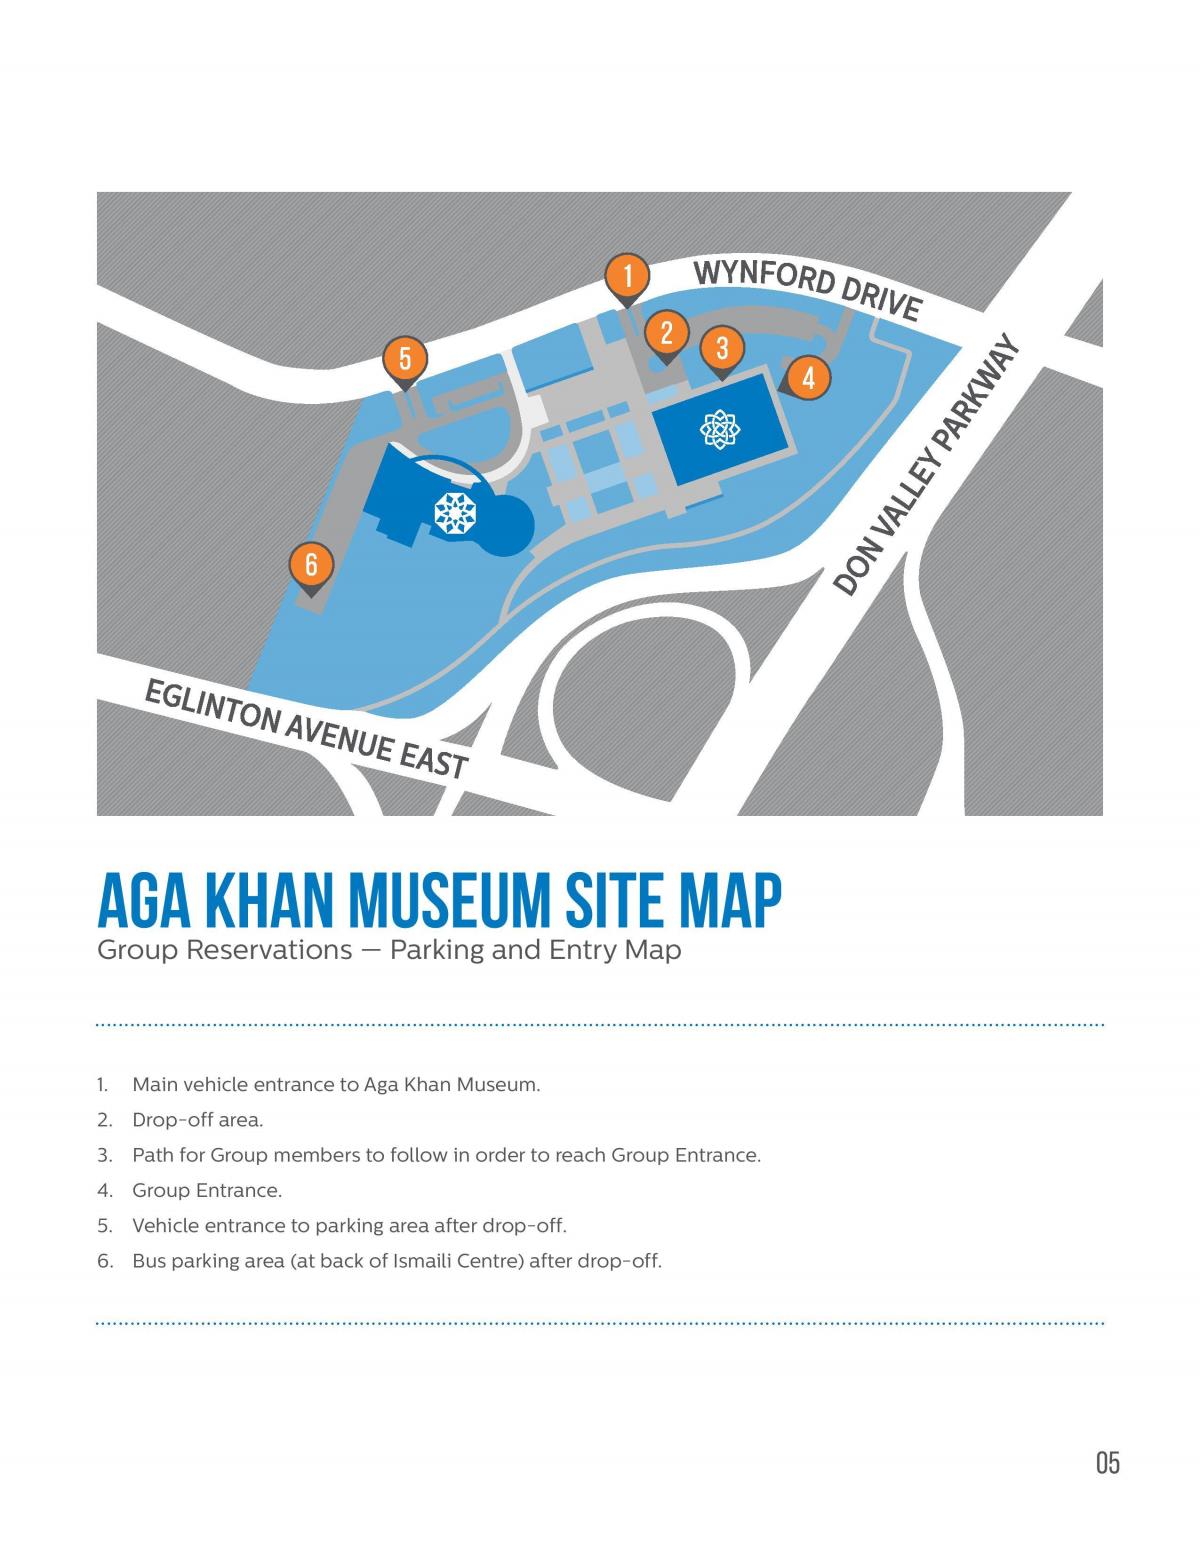 Քարտեզ թանգարան Աղա խանի 